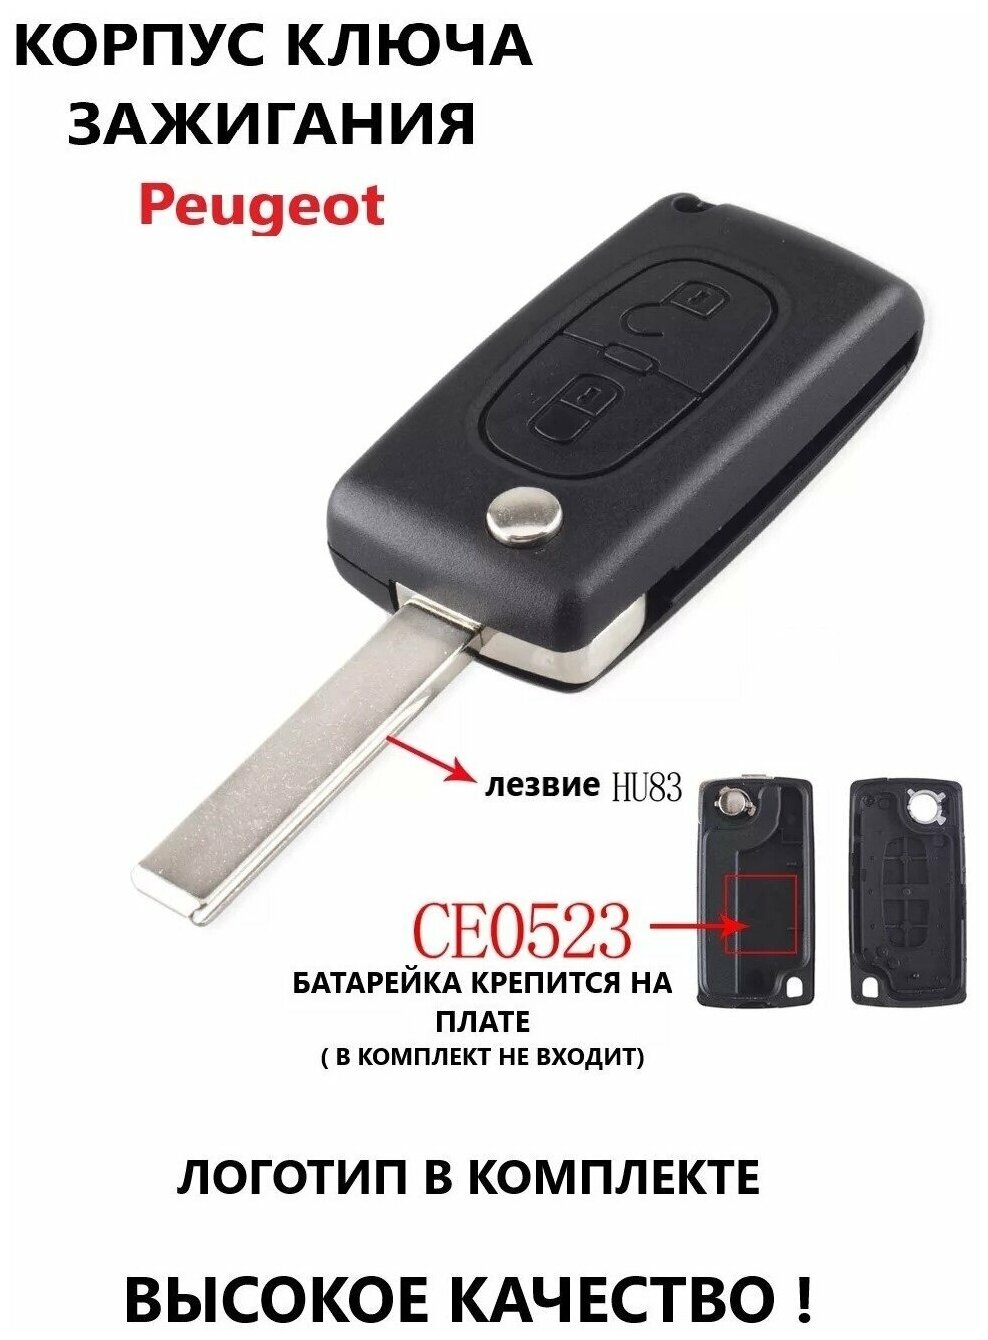 Корпус ключа зажигания Peugeot (2 кнопки HU83)